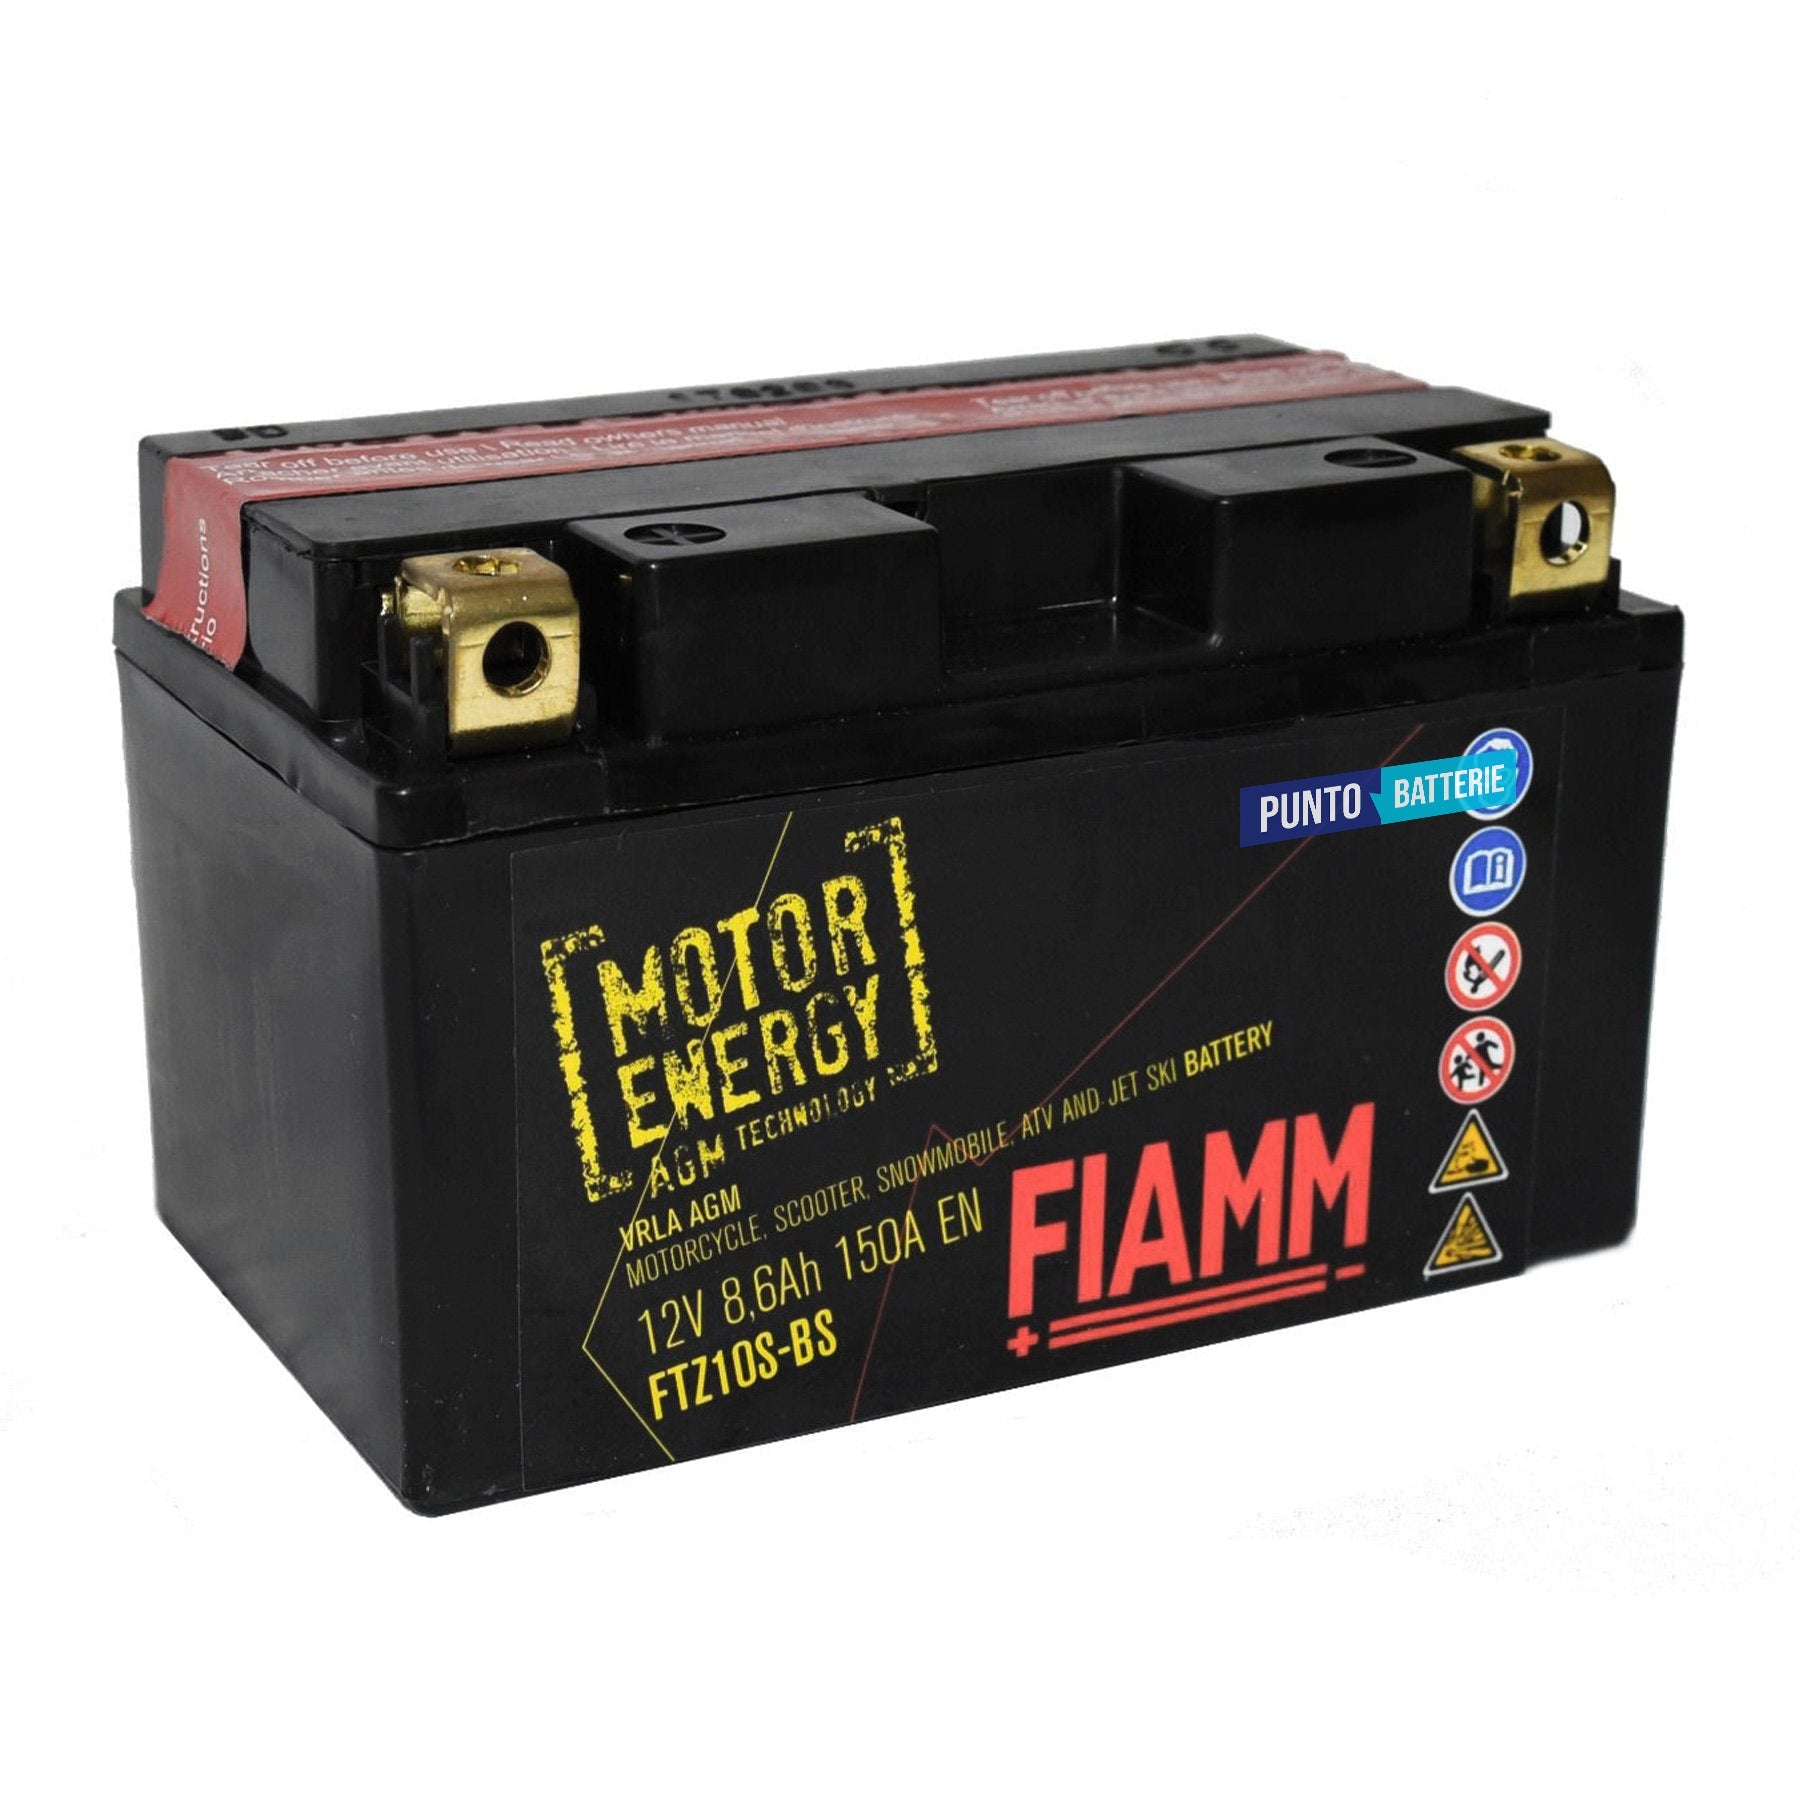 Batteria originale Fiamm Motor Energy AGM FTZ10S-BS, dimensioni 150 x 87 x 93, polo positivo a sinistra, 12 volt, 8 amperora, 150 ampere. Batteria per moto, scooter e powersport.